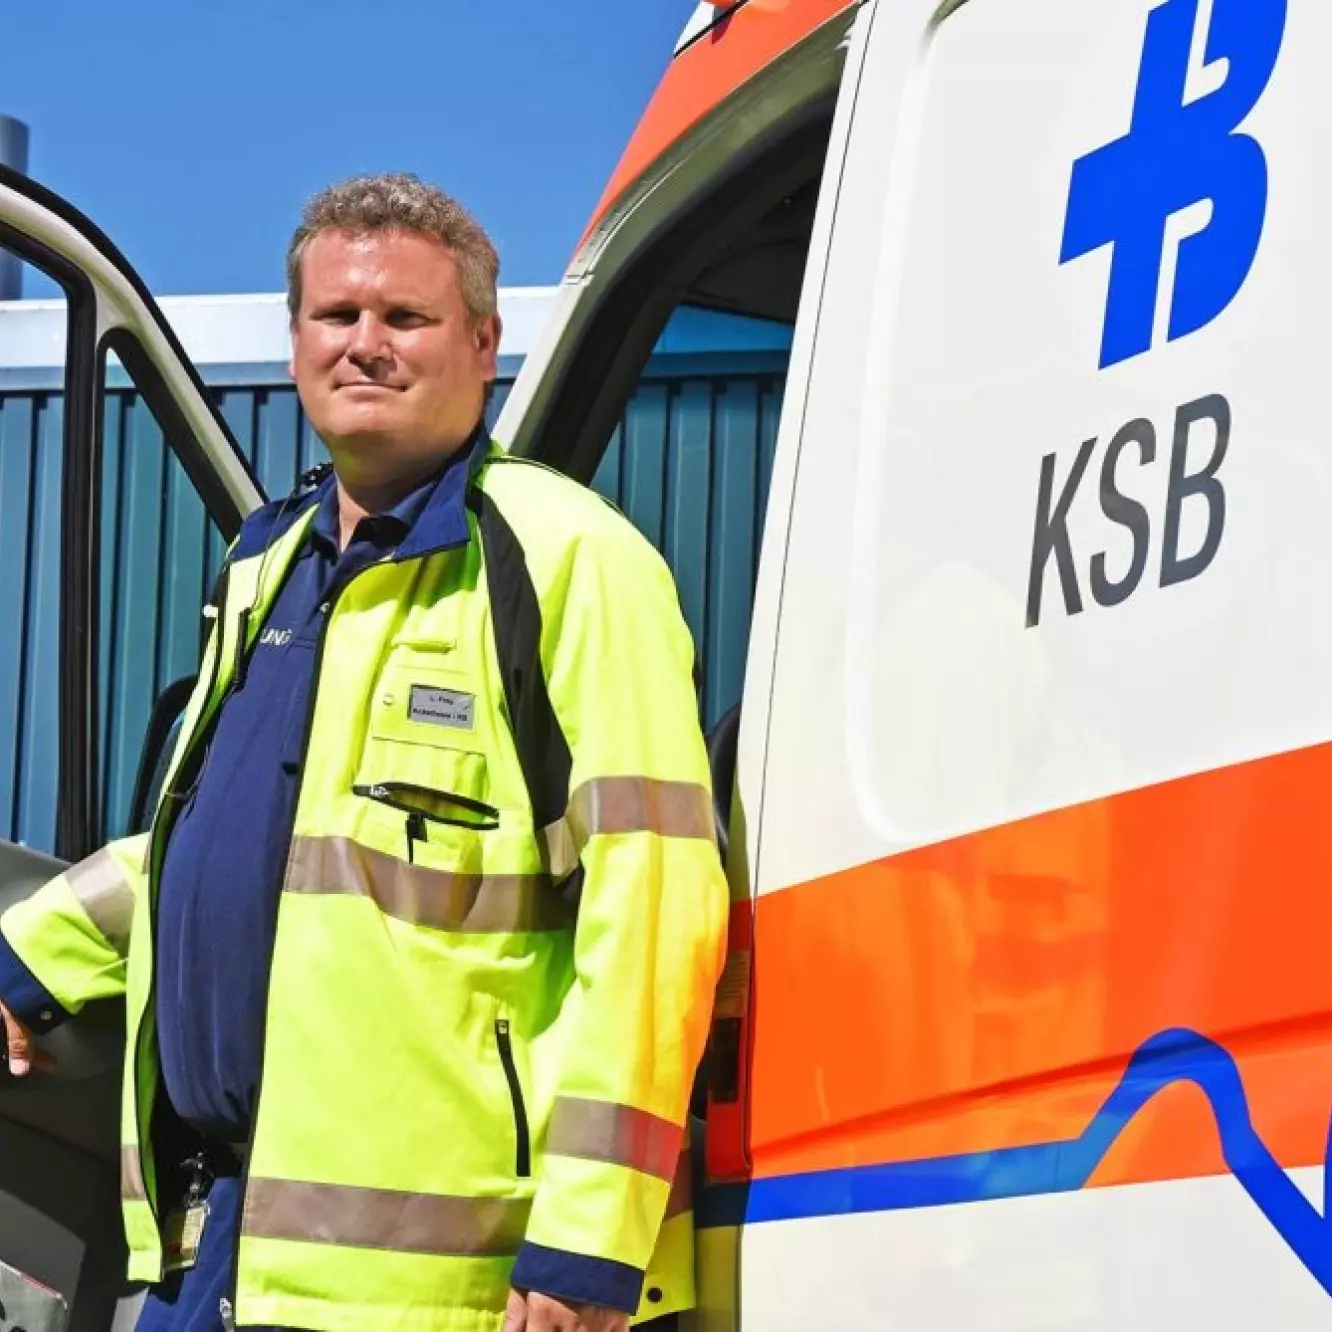 Rettungssanitäter Lukas Frey vor dem Ambulanzfahrzeug